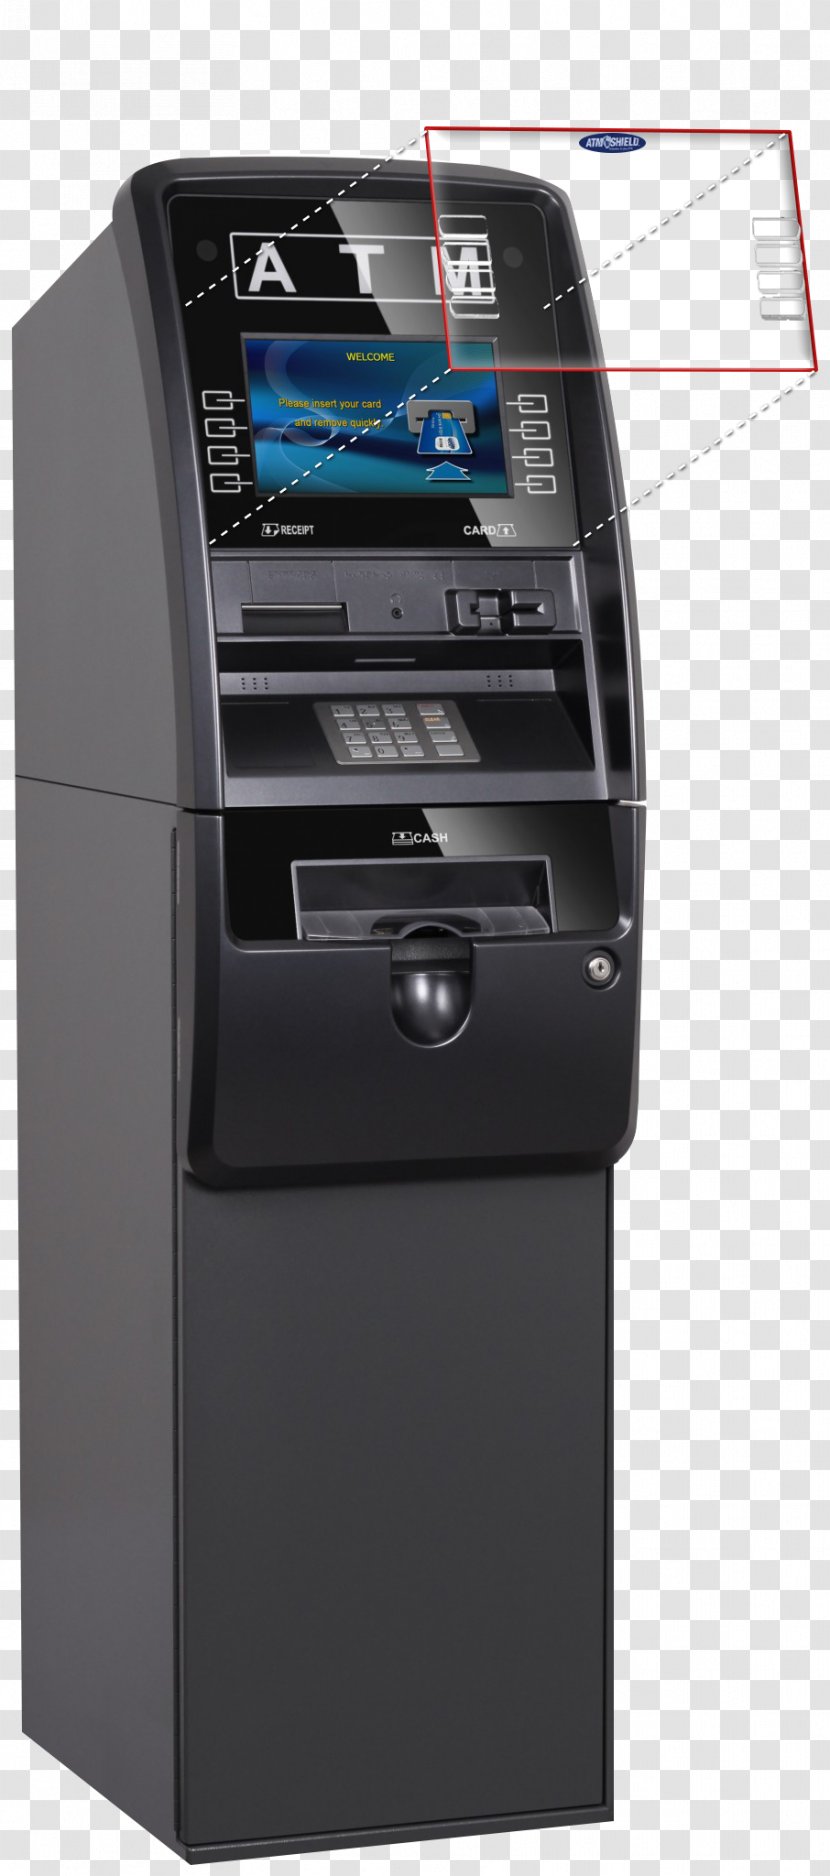 Automated Teller Machine EMV Bank Cash ATM Card - Receipt - Atm Transparent PNG